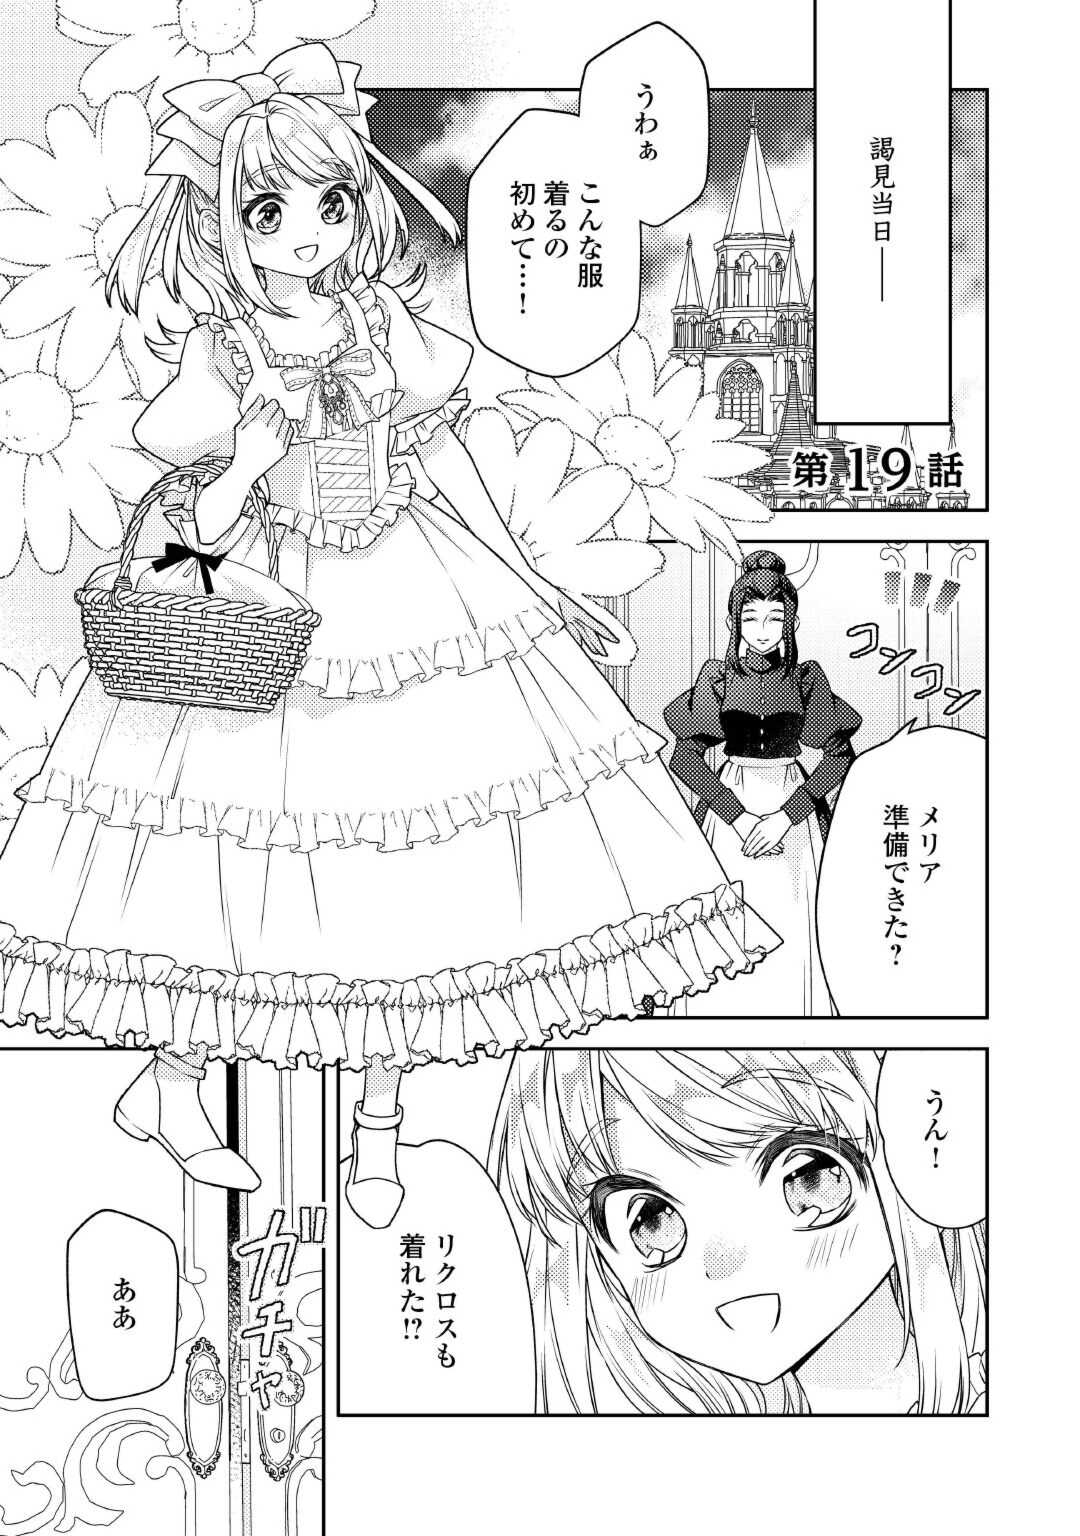 Toaru Chisana Mura No Chi Tona Tanya Ya San - Chapter 19 - Page 1